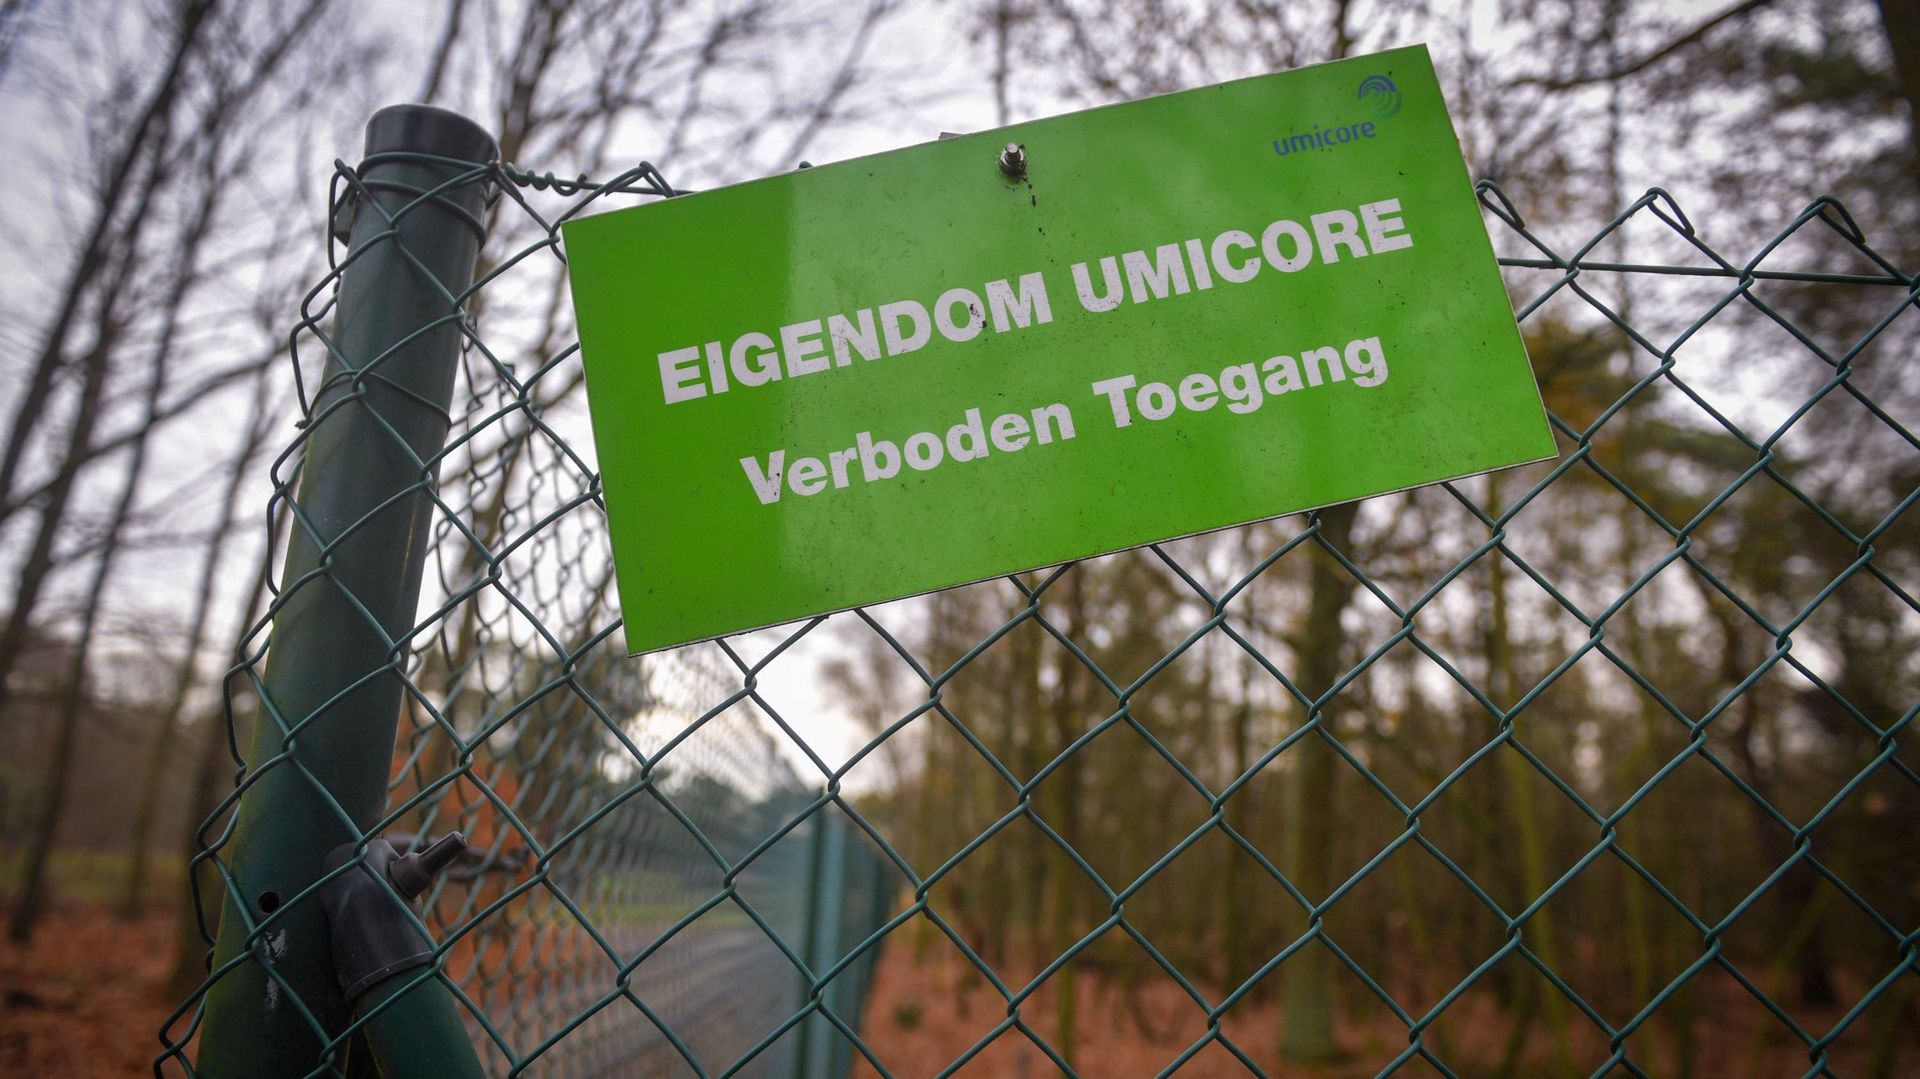 Déchets nucléaires à Olen : Umicore confirme, mais assure qu'il n'y a aucun problème de radioactivité 